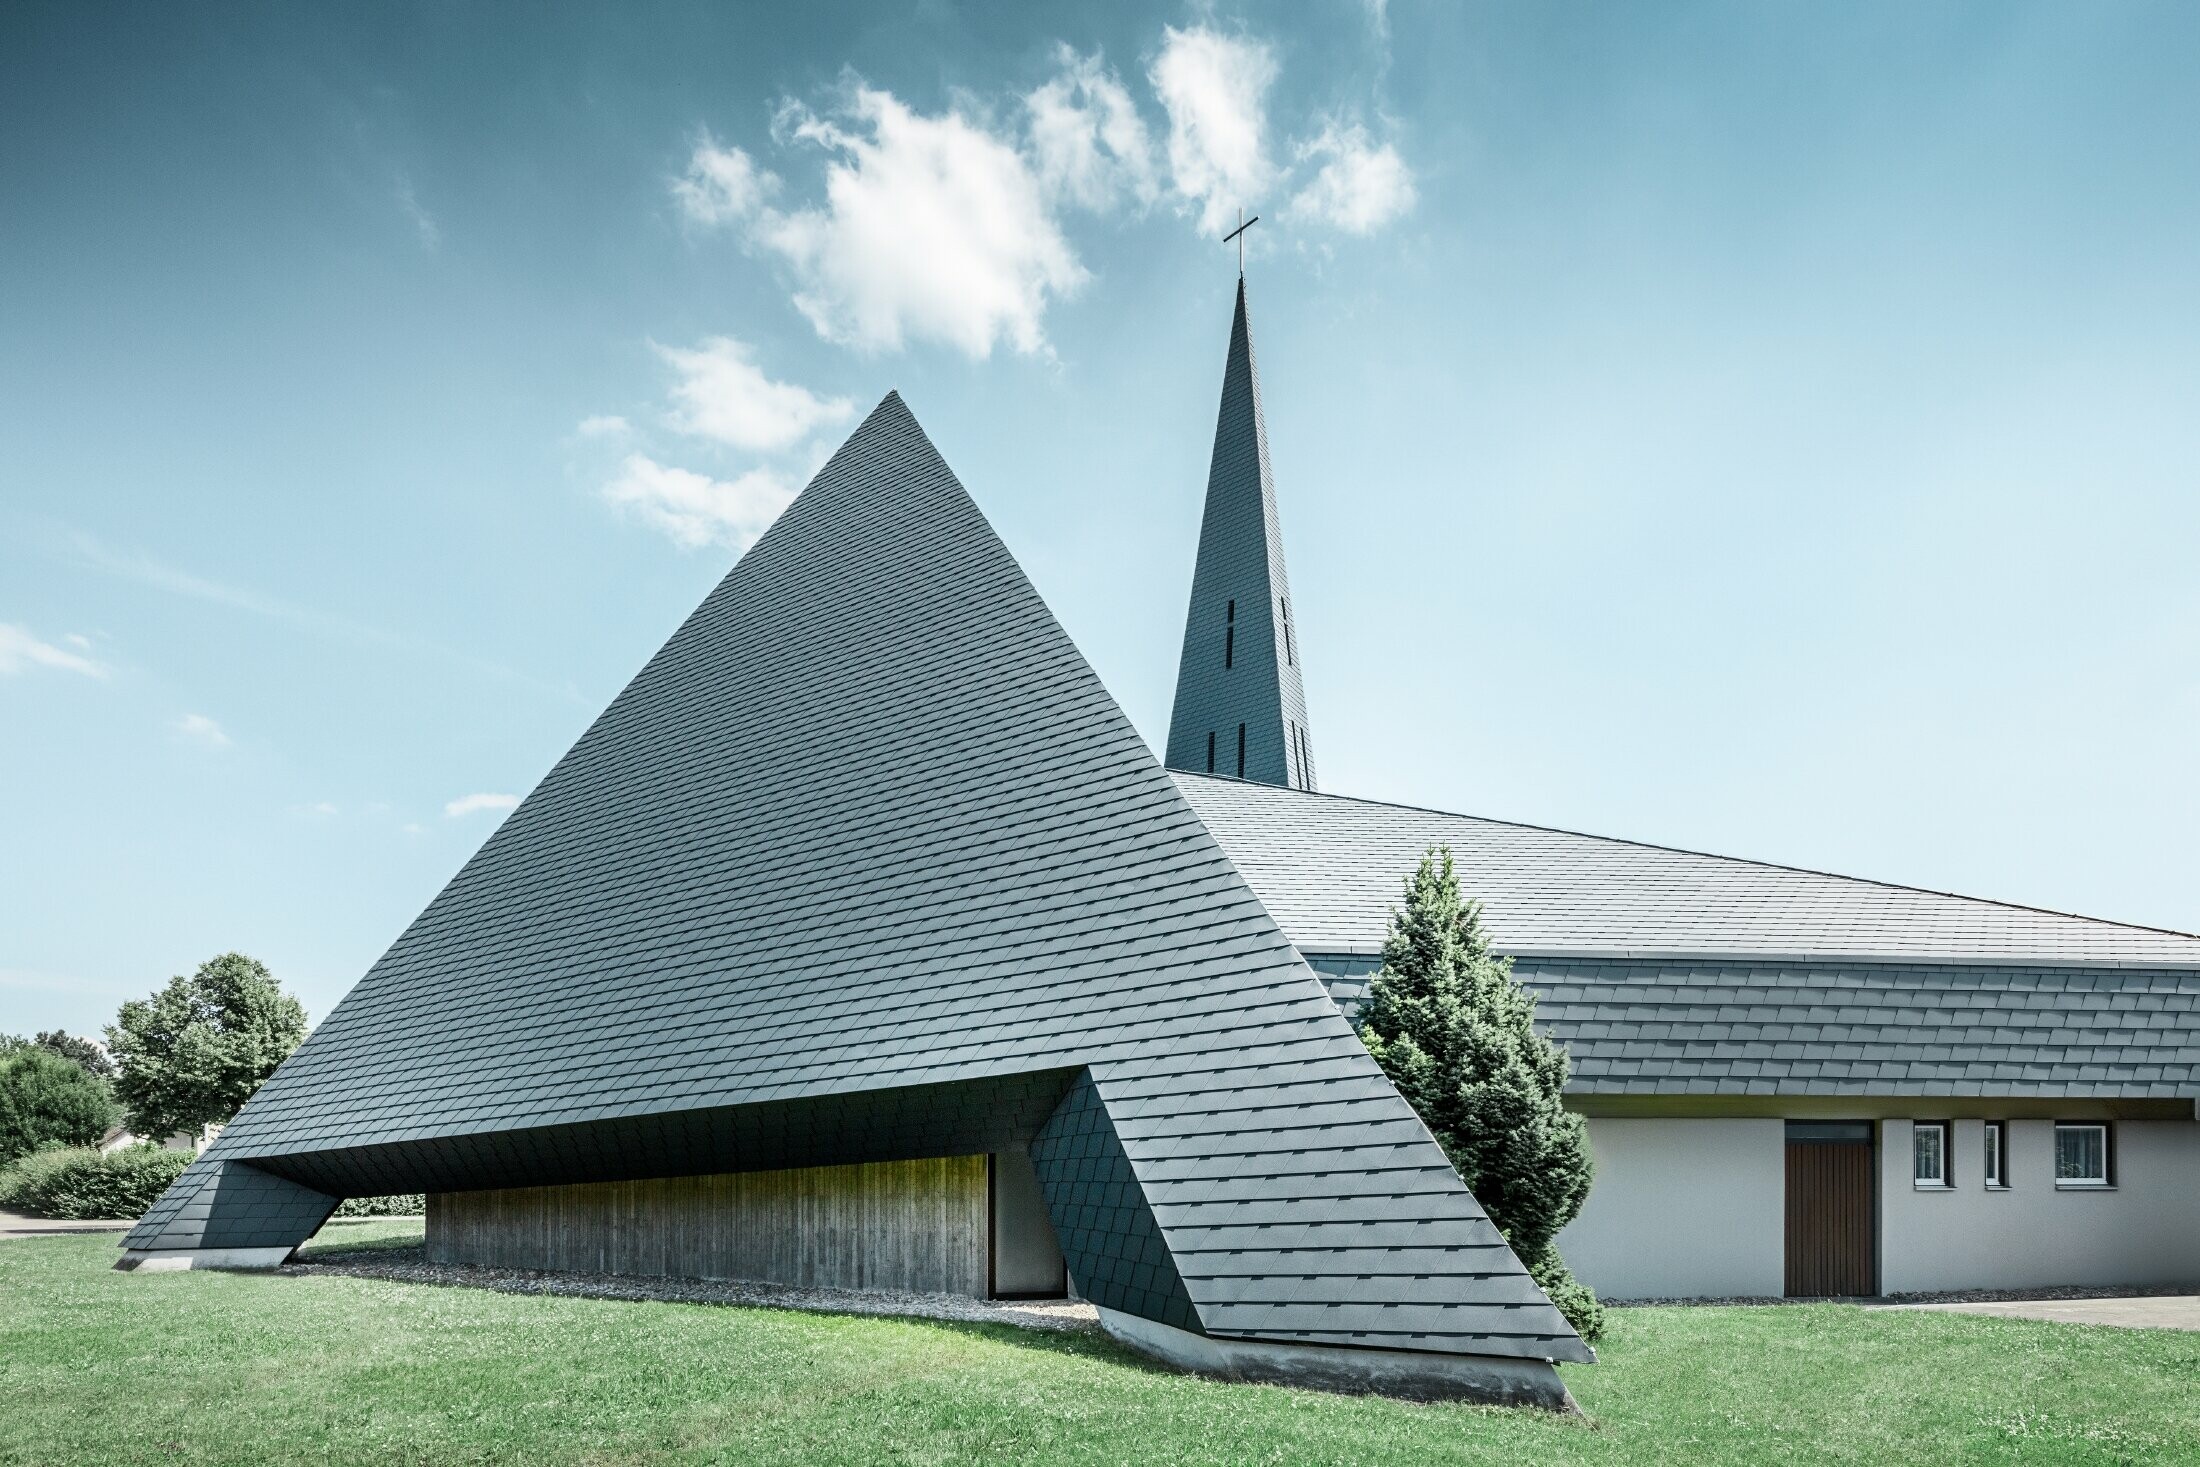 Église catholique de Langenau à la silhouette pyramidale — Couverture de toit réalisée avec des bardeaux en aluminium PREFA de couleur anthracite